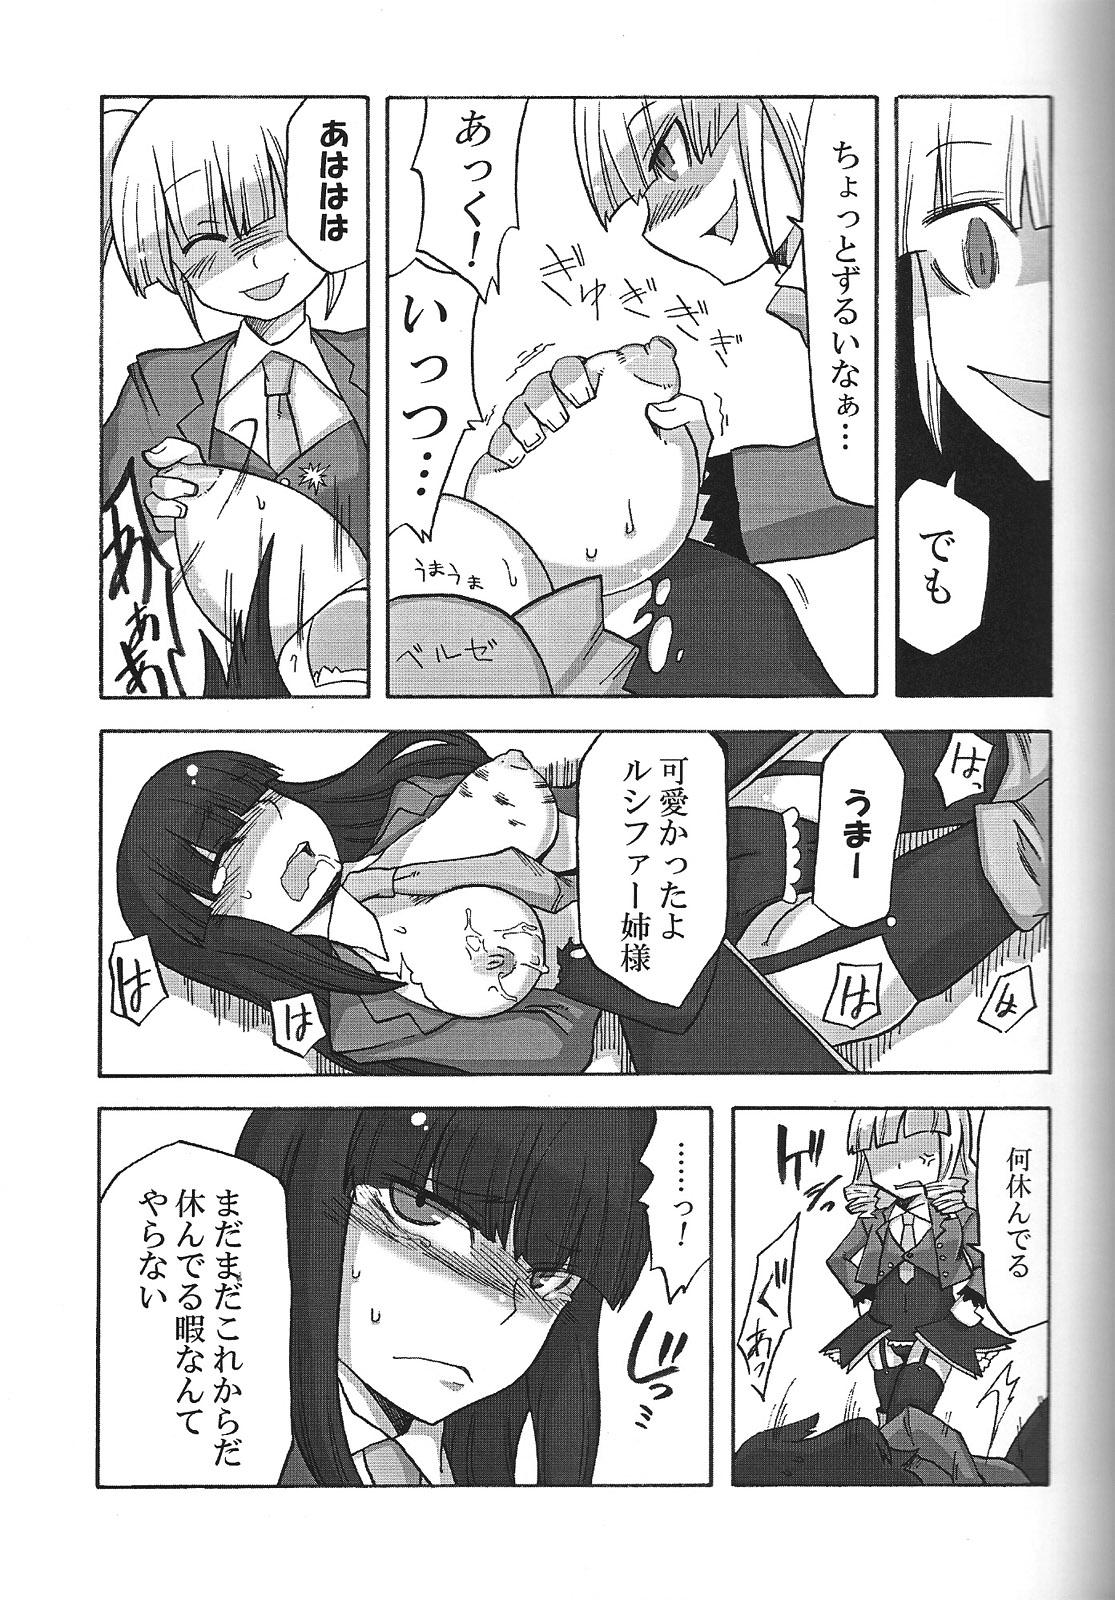 Rubbing Nakayoshi 7 Shimai - Umineko no naku koro ni Ftvgirls - Page 10